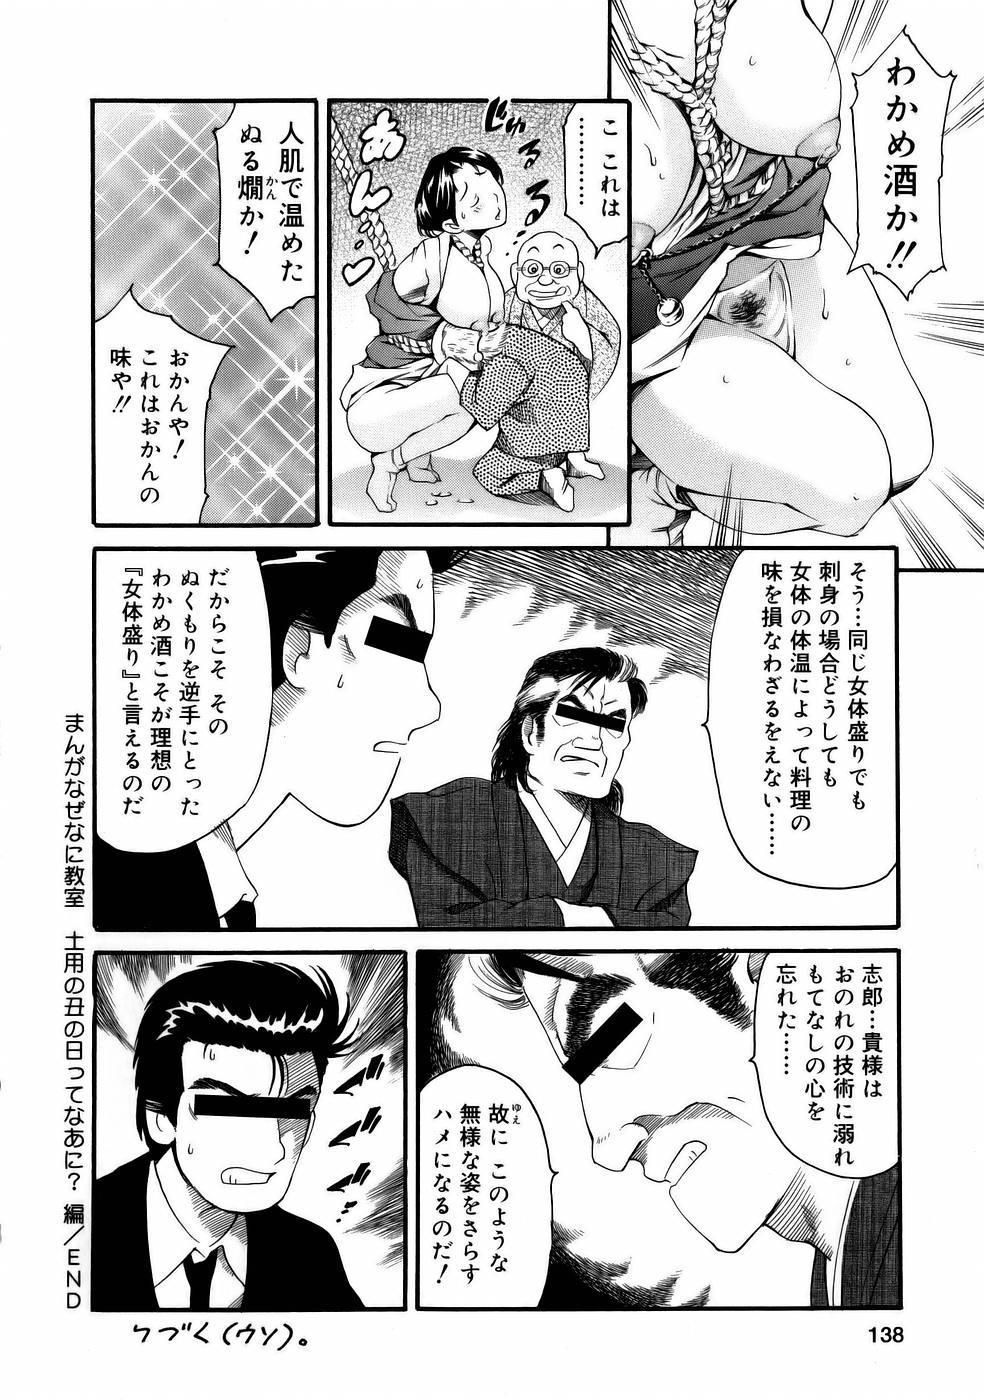 Manga Naze Nani Kyoushitsu 139